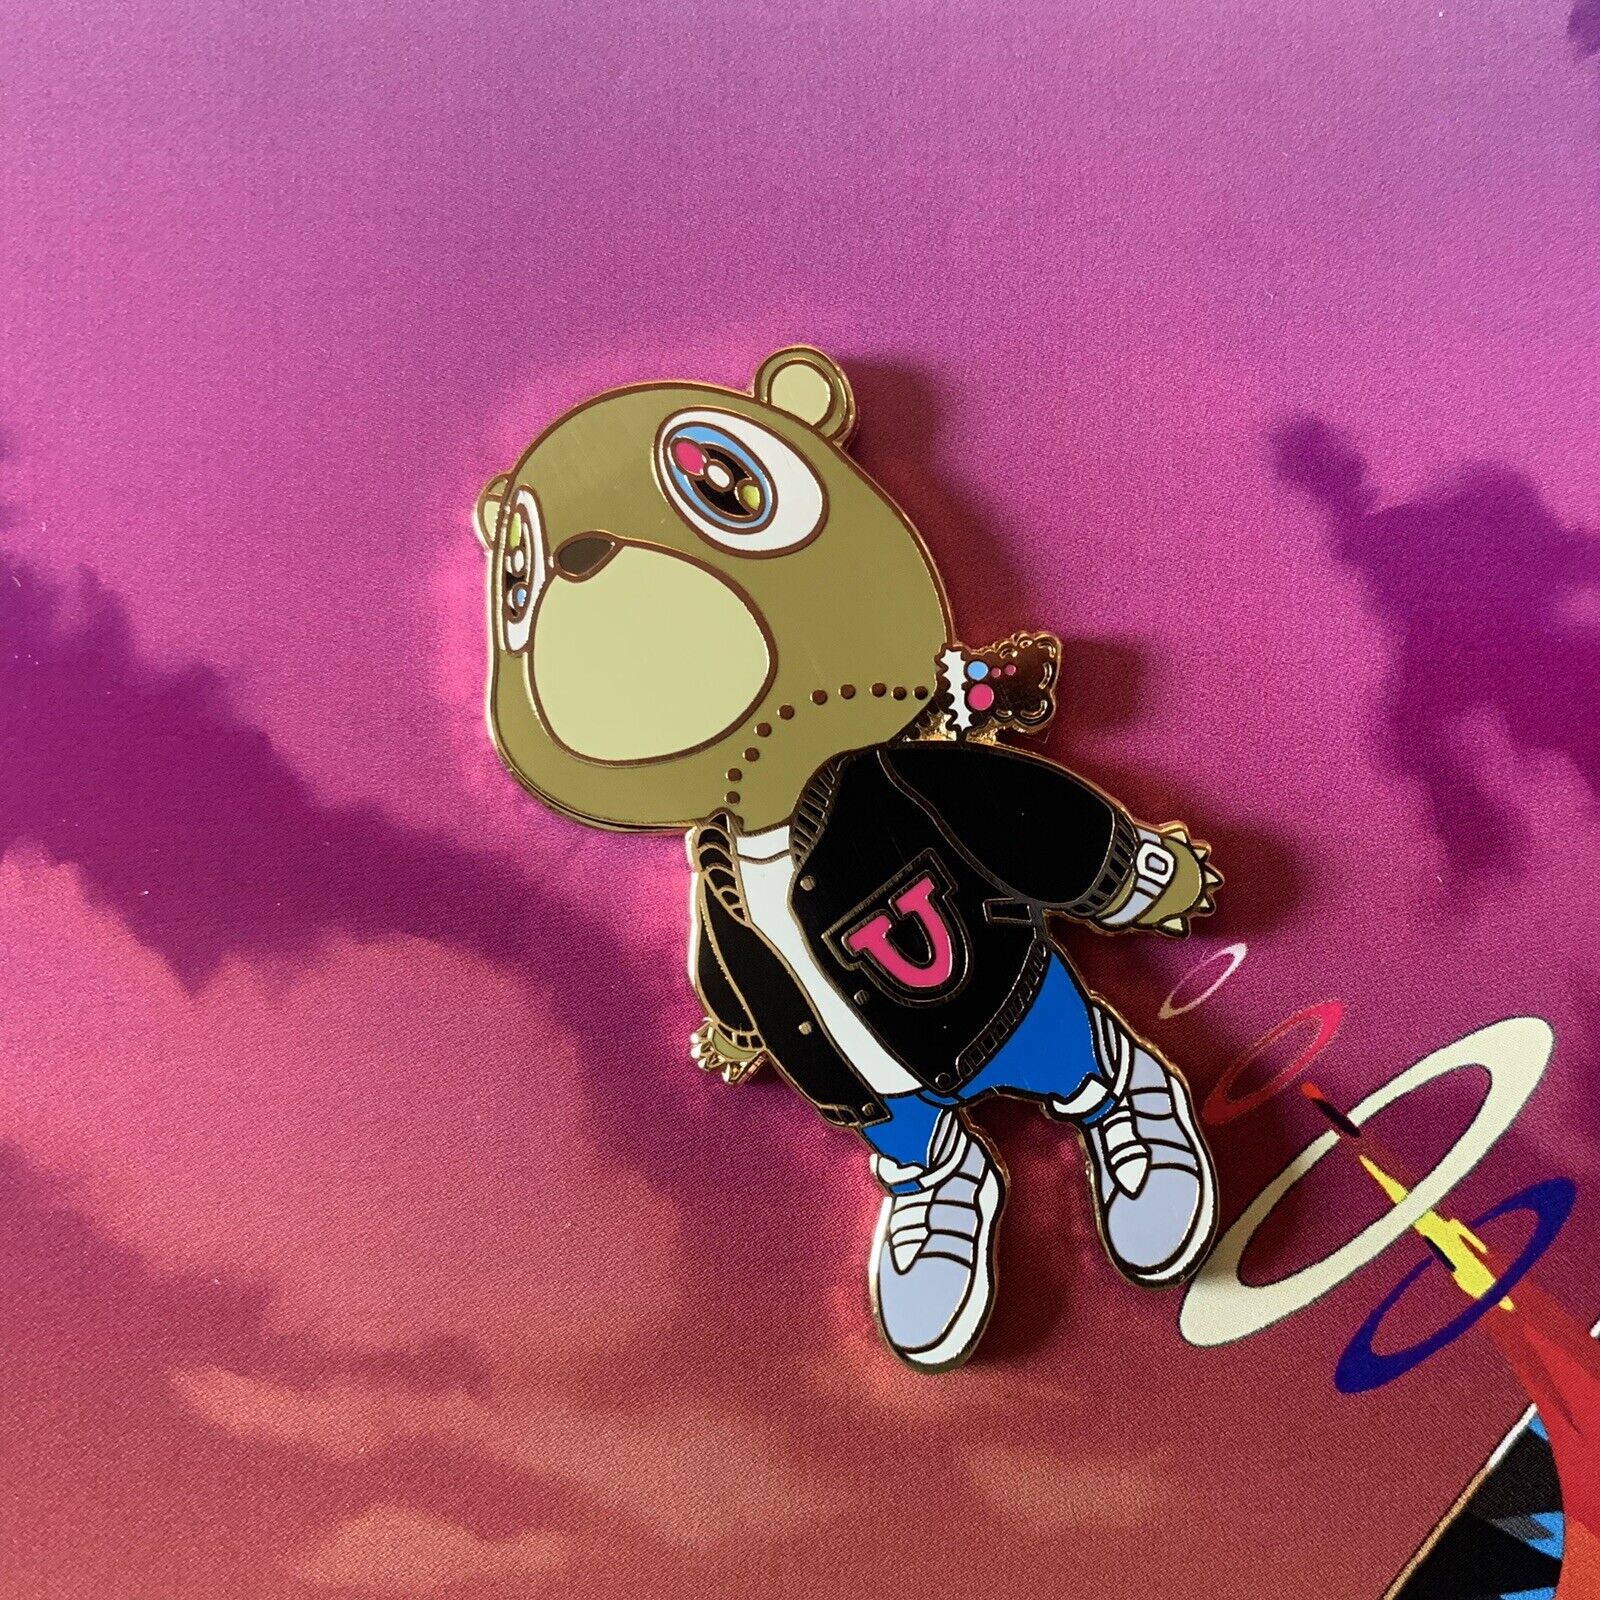 Yeezy Bear Lapel Pin Kanye West Graduation Black Jacket Hip Hop Music Pins Ltd.